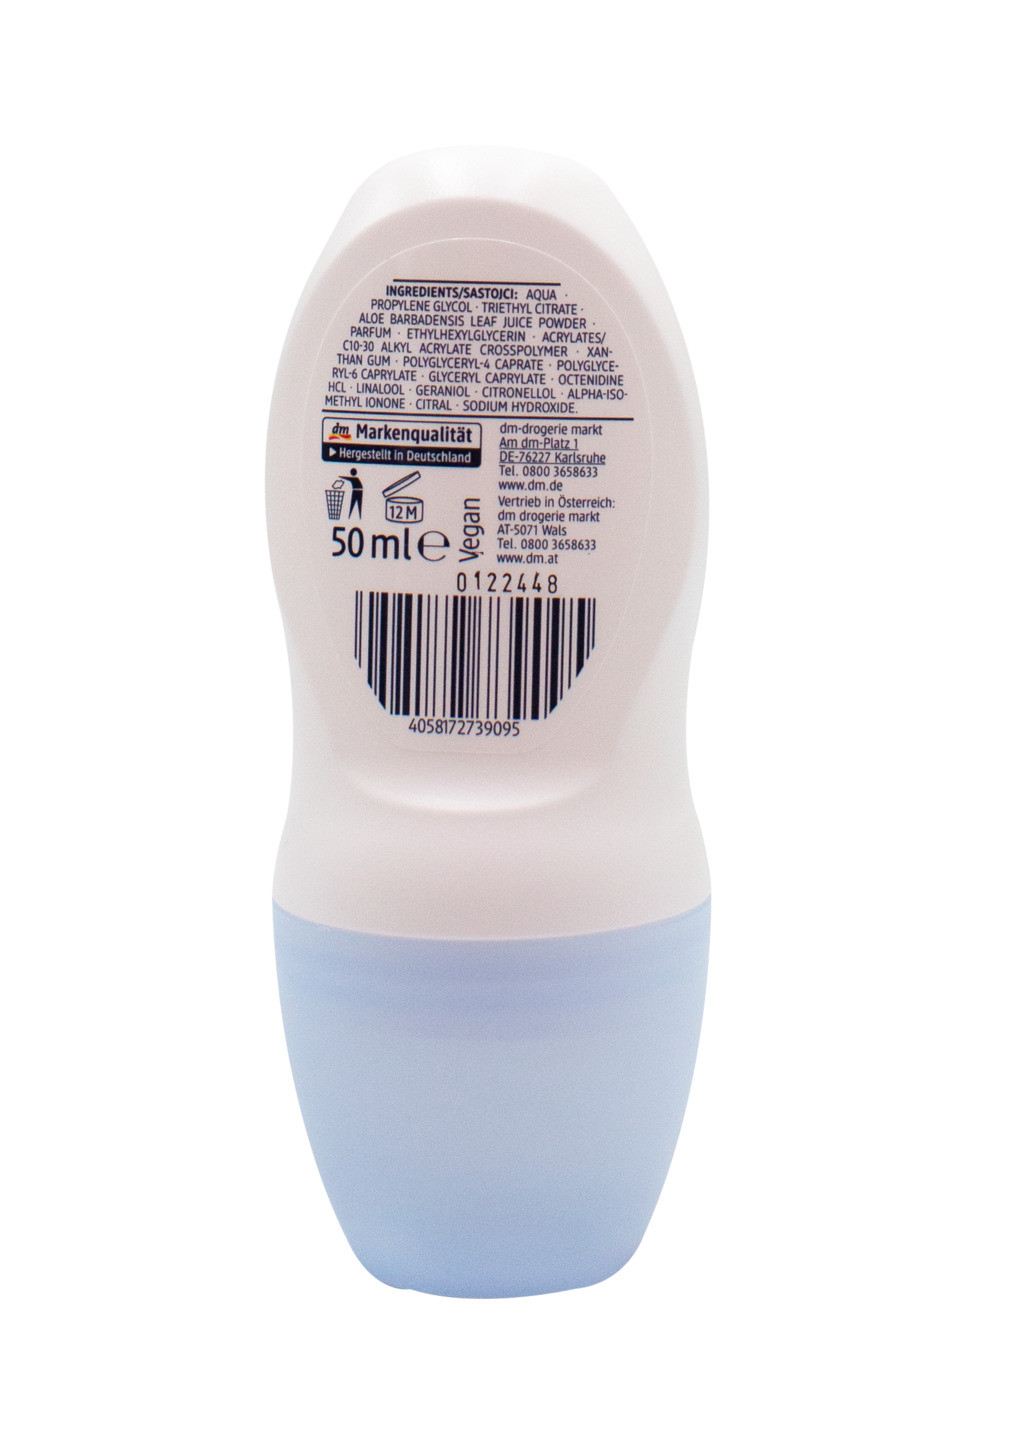 Роликовый дезодорант Sensitive 50 мл Balea (256733622)